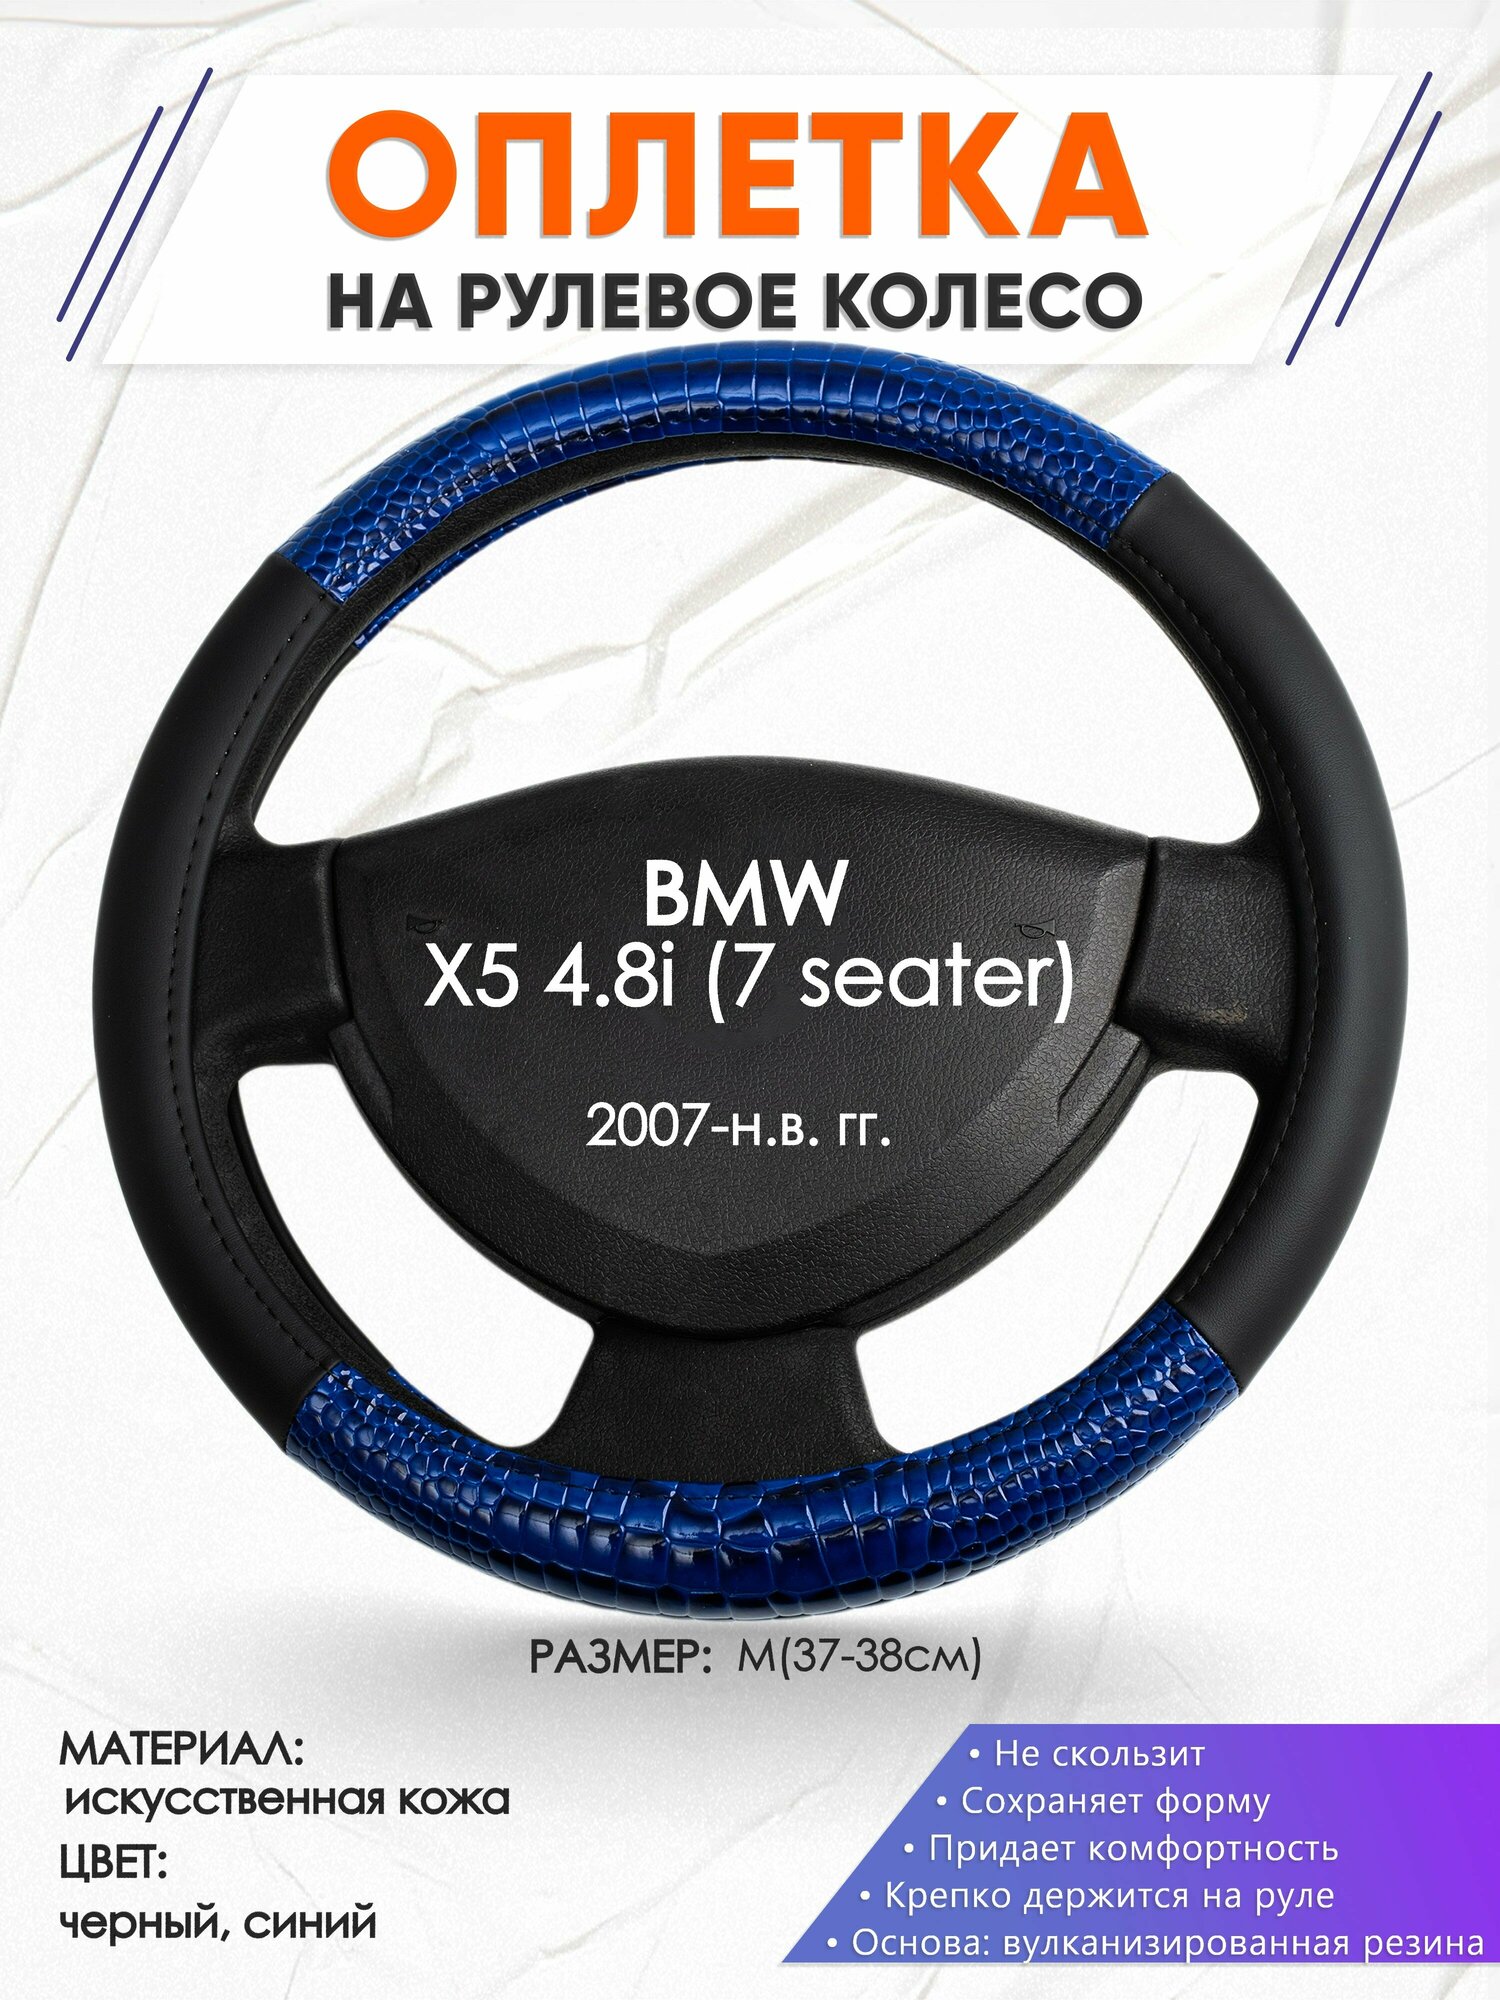 Оплетка наруль для BMW X5 4.8i (7 seater)(Бмв икс5) 2007-н. в. годов выпуска, размер M(37-38см), Искусственная кожа 82